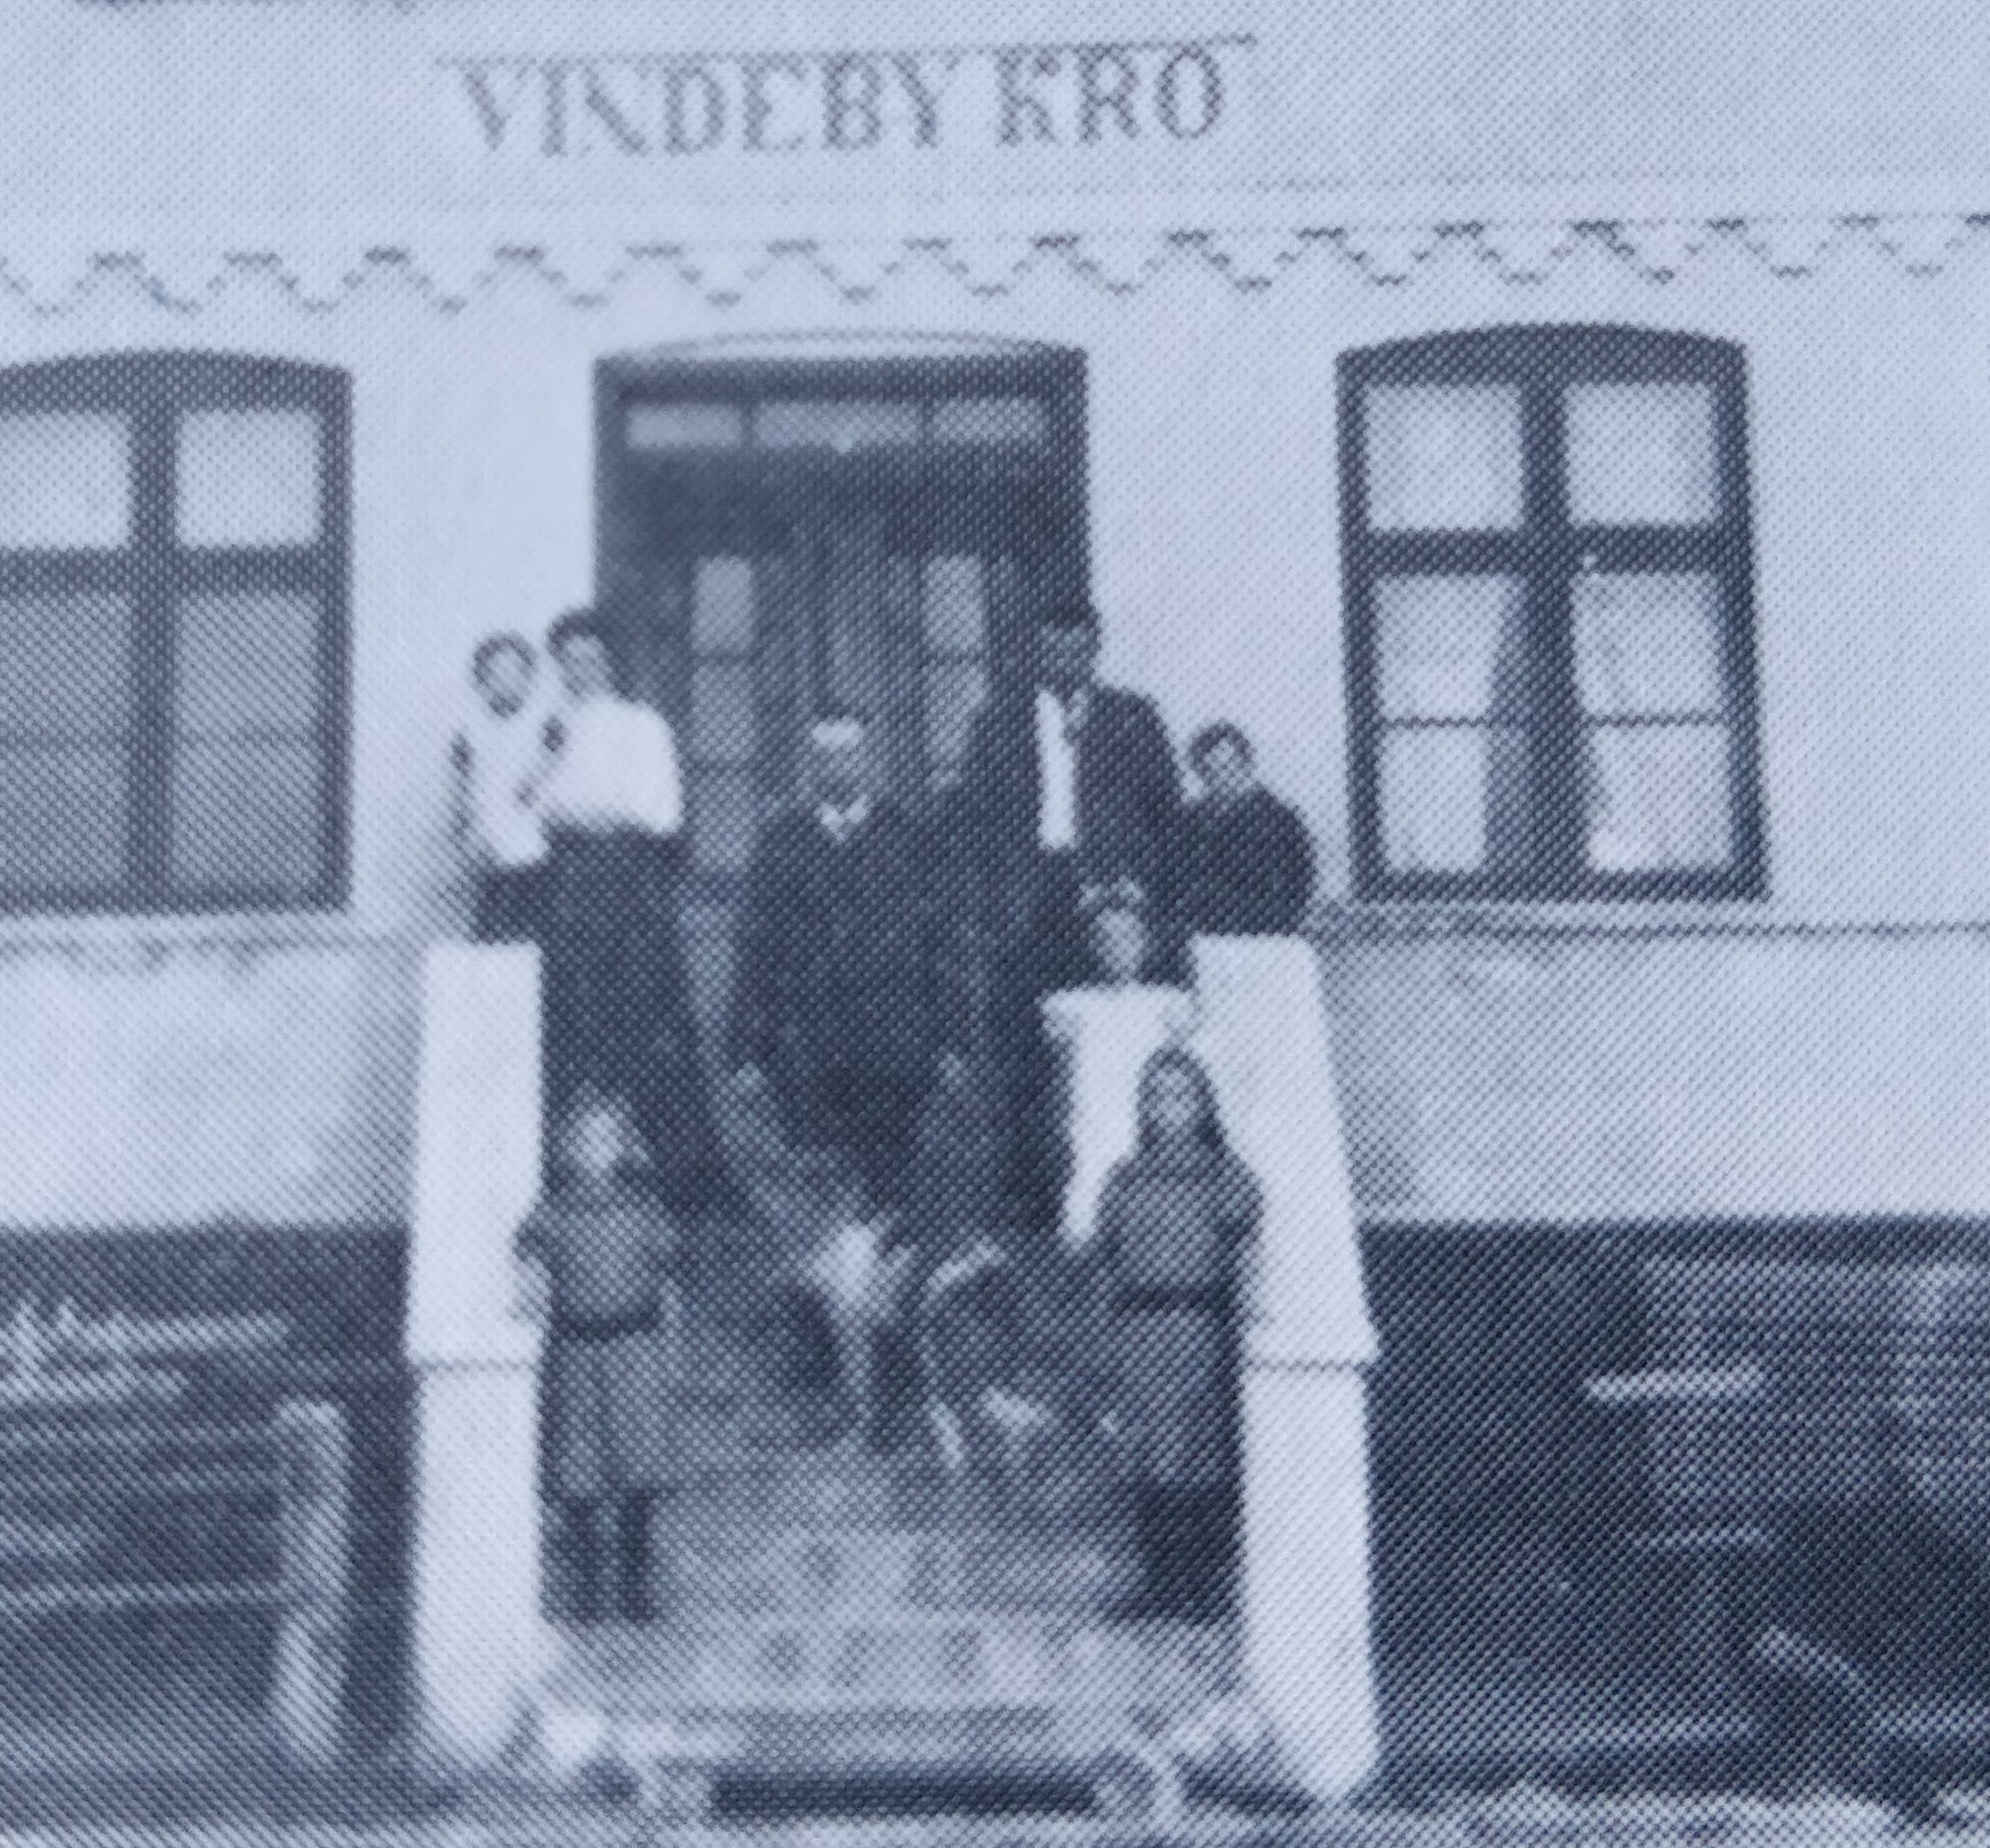 Vindeby Kro 4